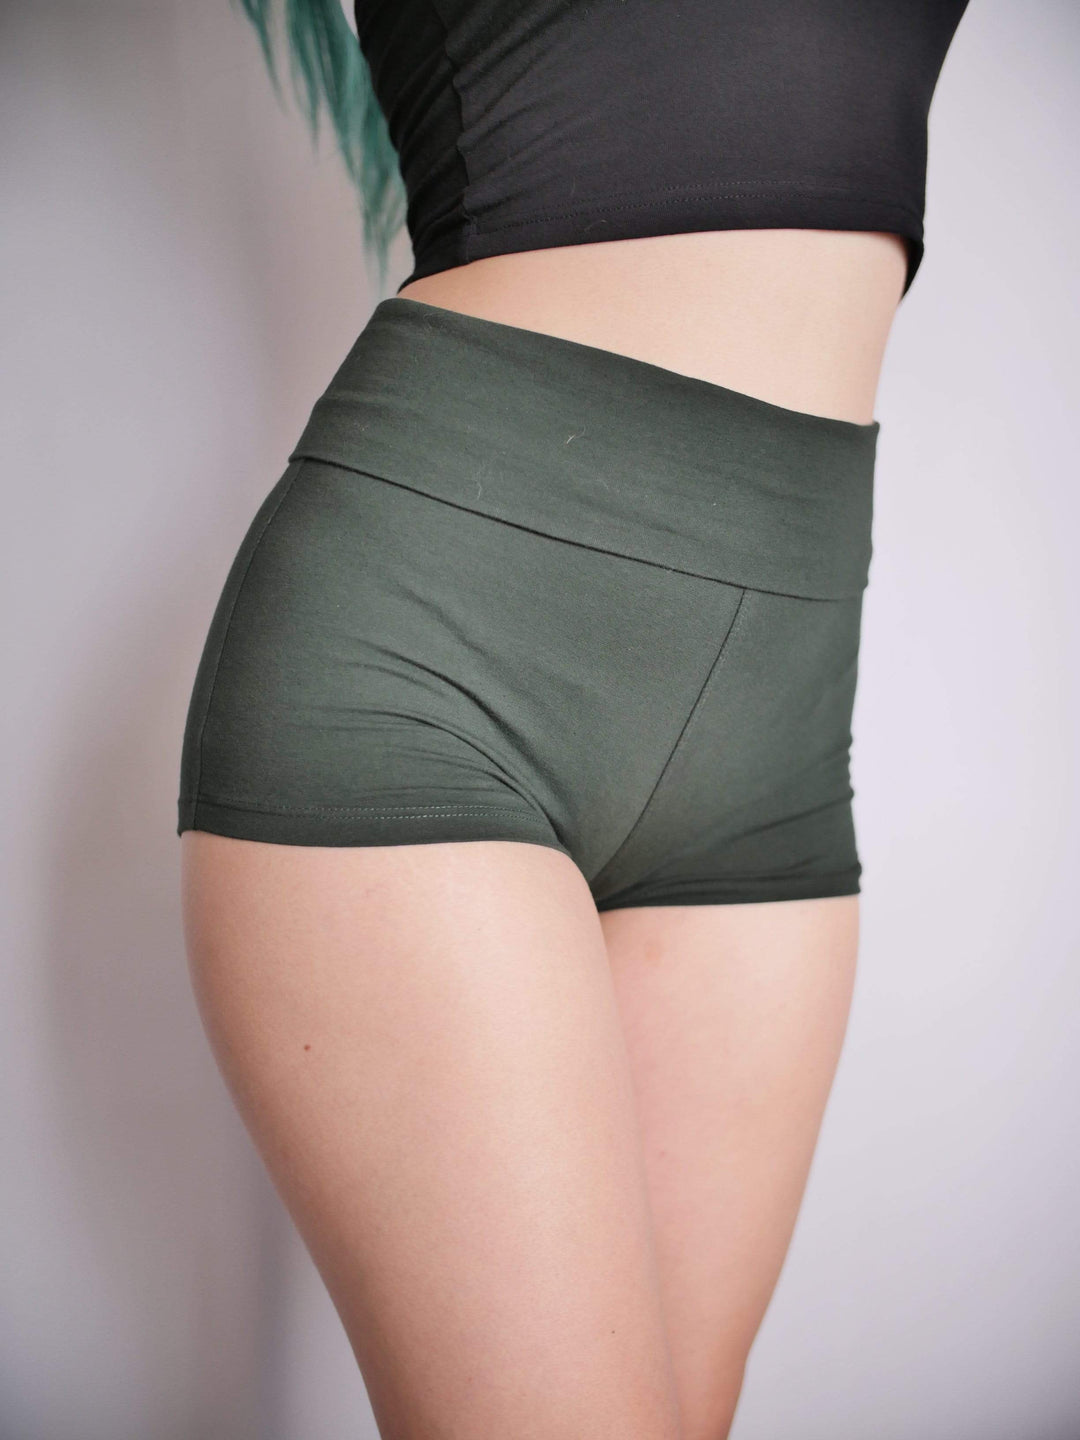 PixelThat Punderwear Yoga Shorts Slither In? Yoga Shorts/Pants